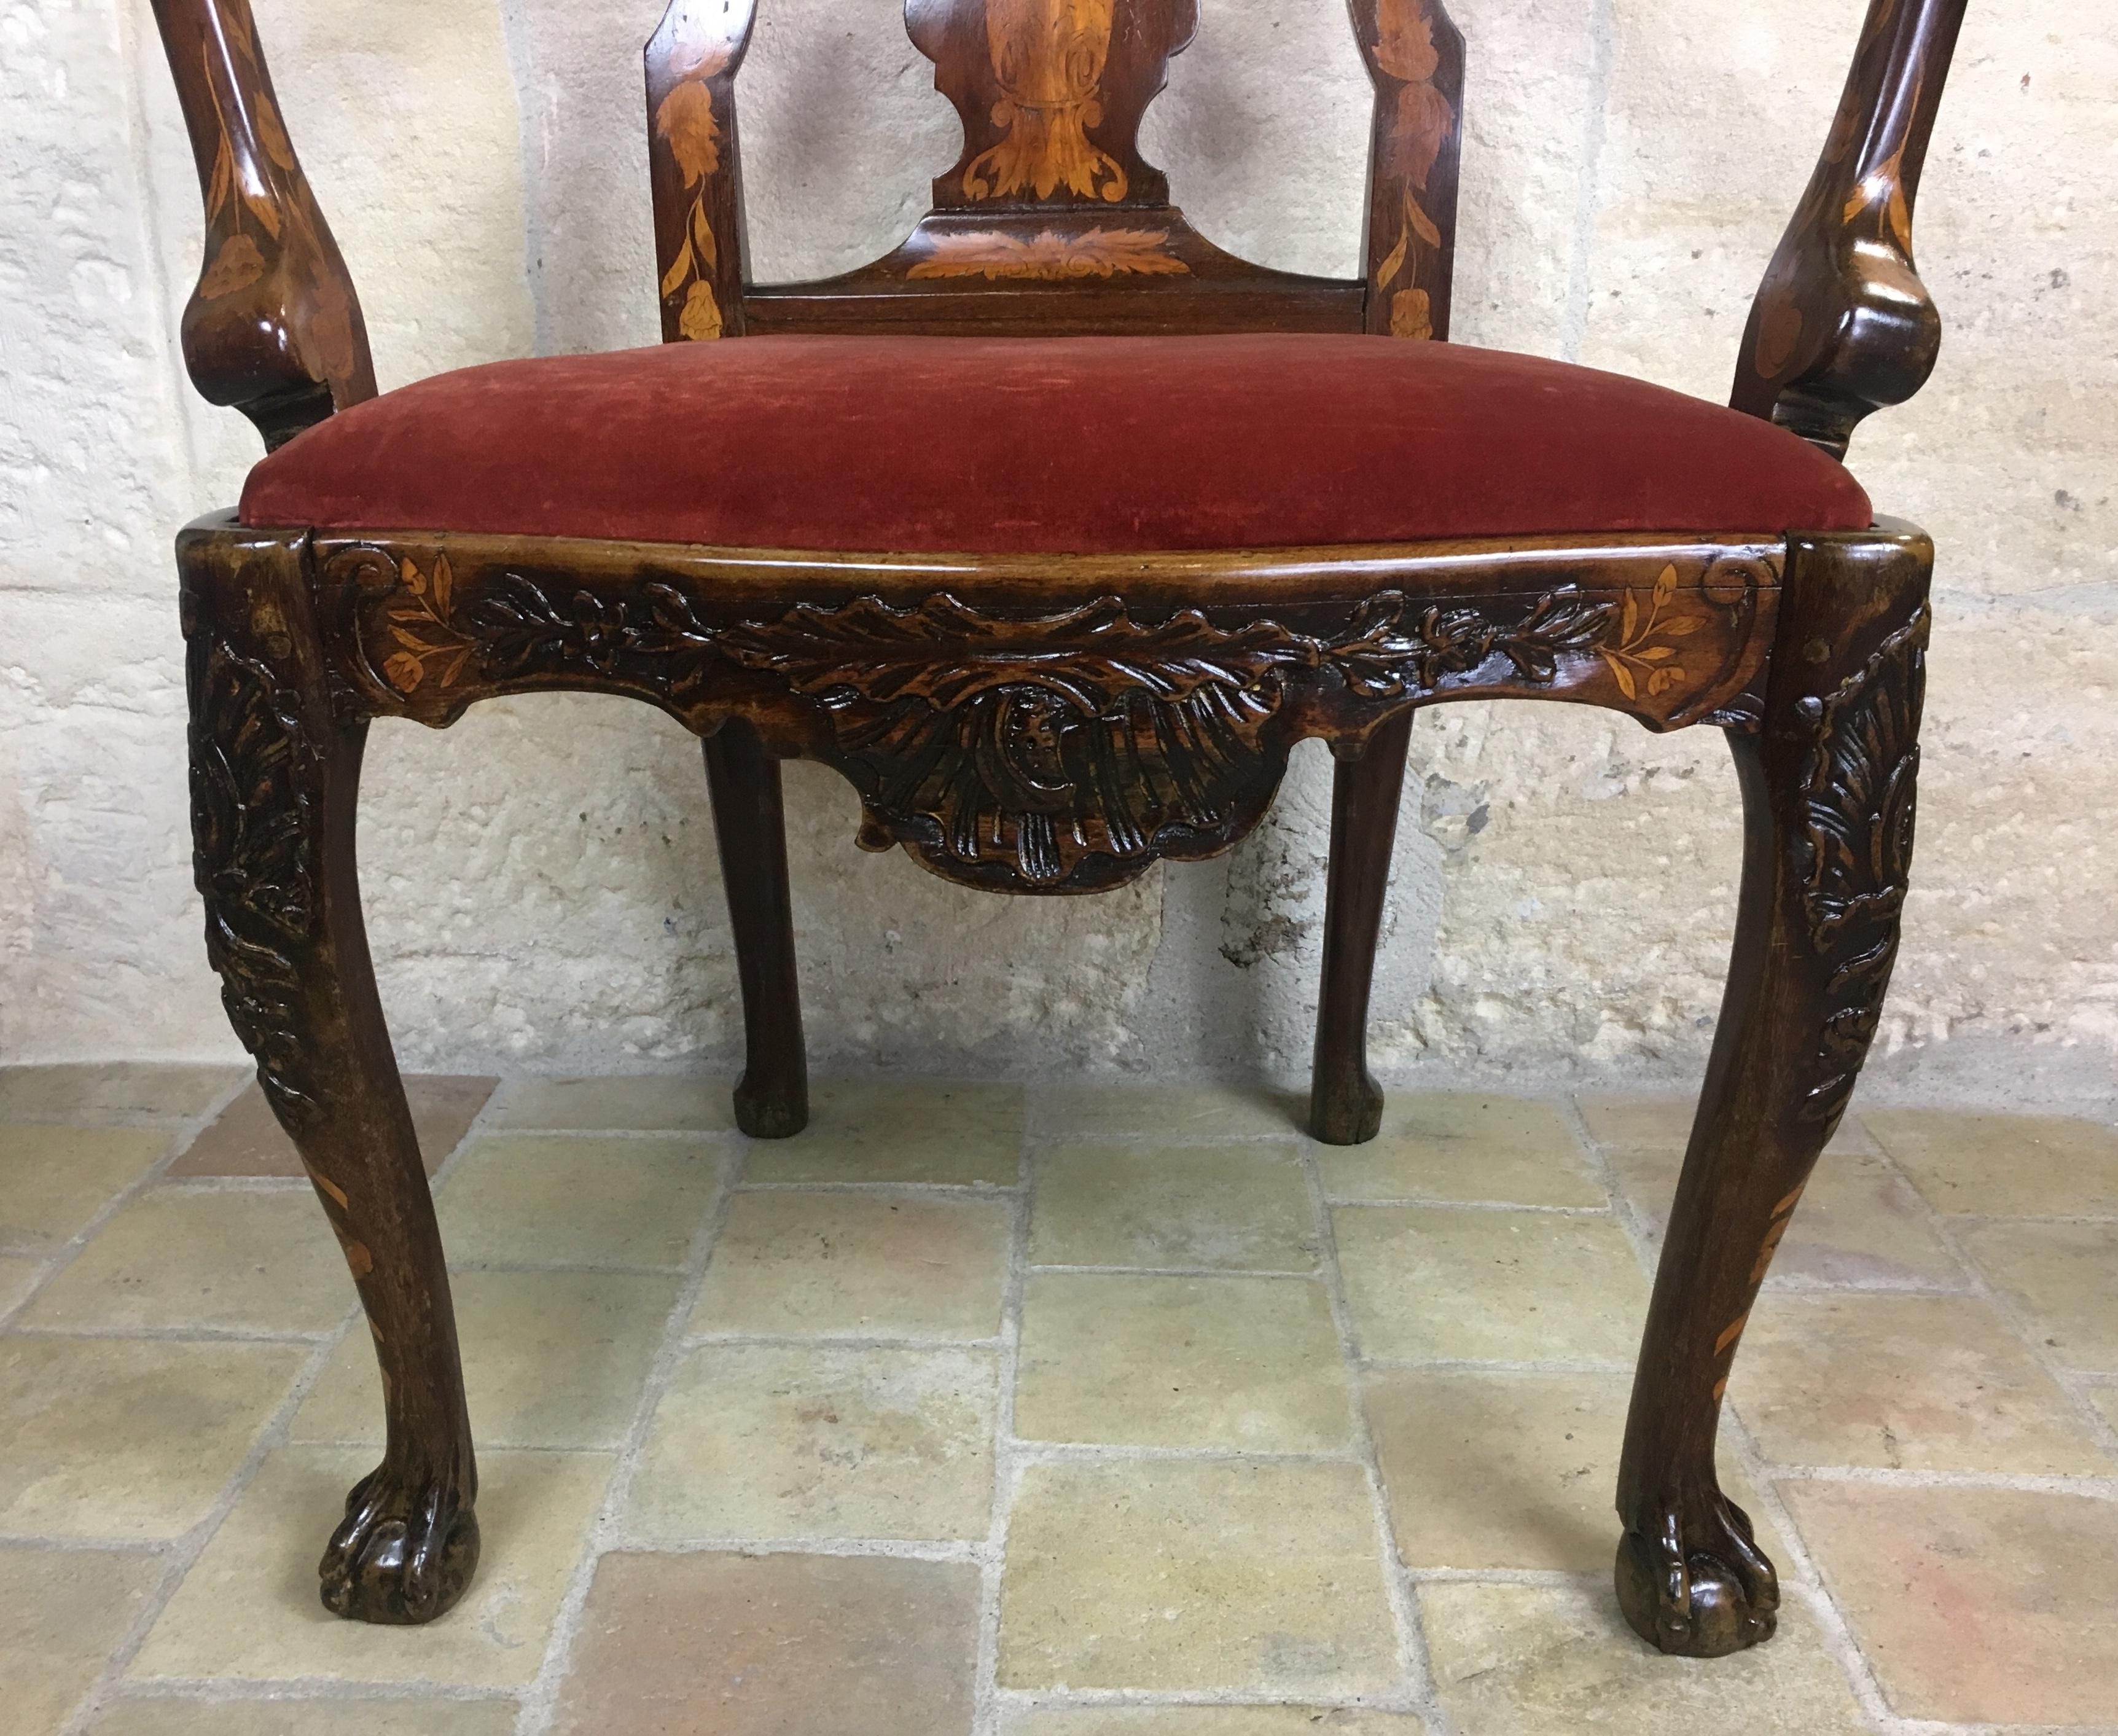 Dieser seltene holländische Sessel mit Intarsien hat ein langes Leben hinter sich und ist nun bereit, sich an dem richtigen Ort in Ihrem Zuhause zu präsentieren. Die Satinholzeinlegearbeiten auf diesem Stuhl sind bemerkenswert und intakt. 

Der